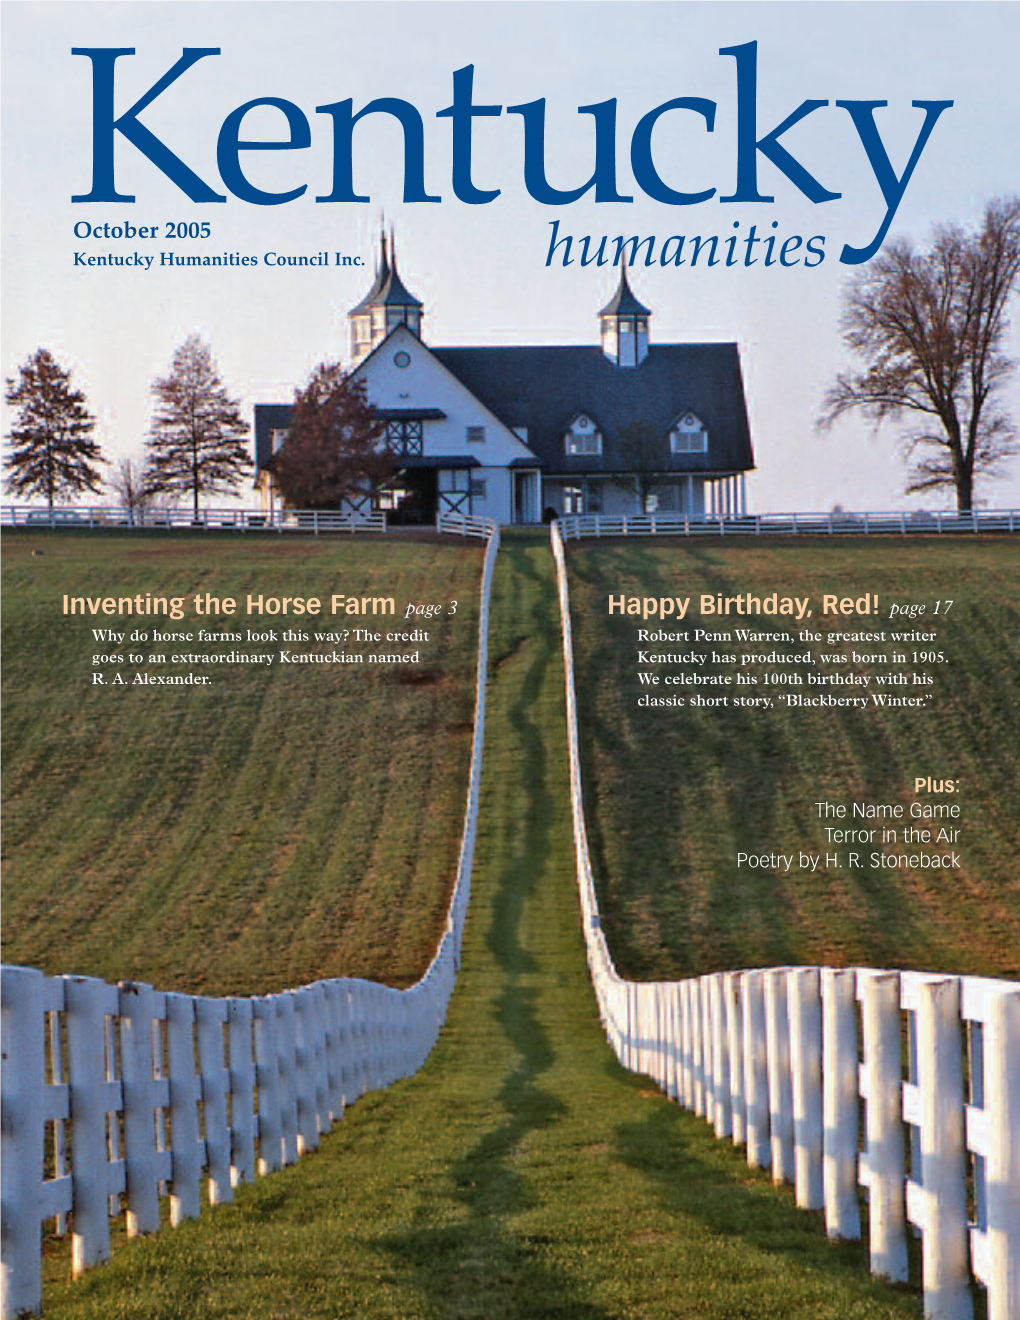 October 2005 Kentuckykentucky Humanities Council Inc